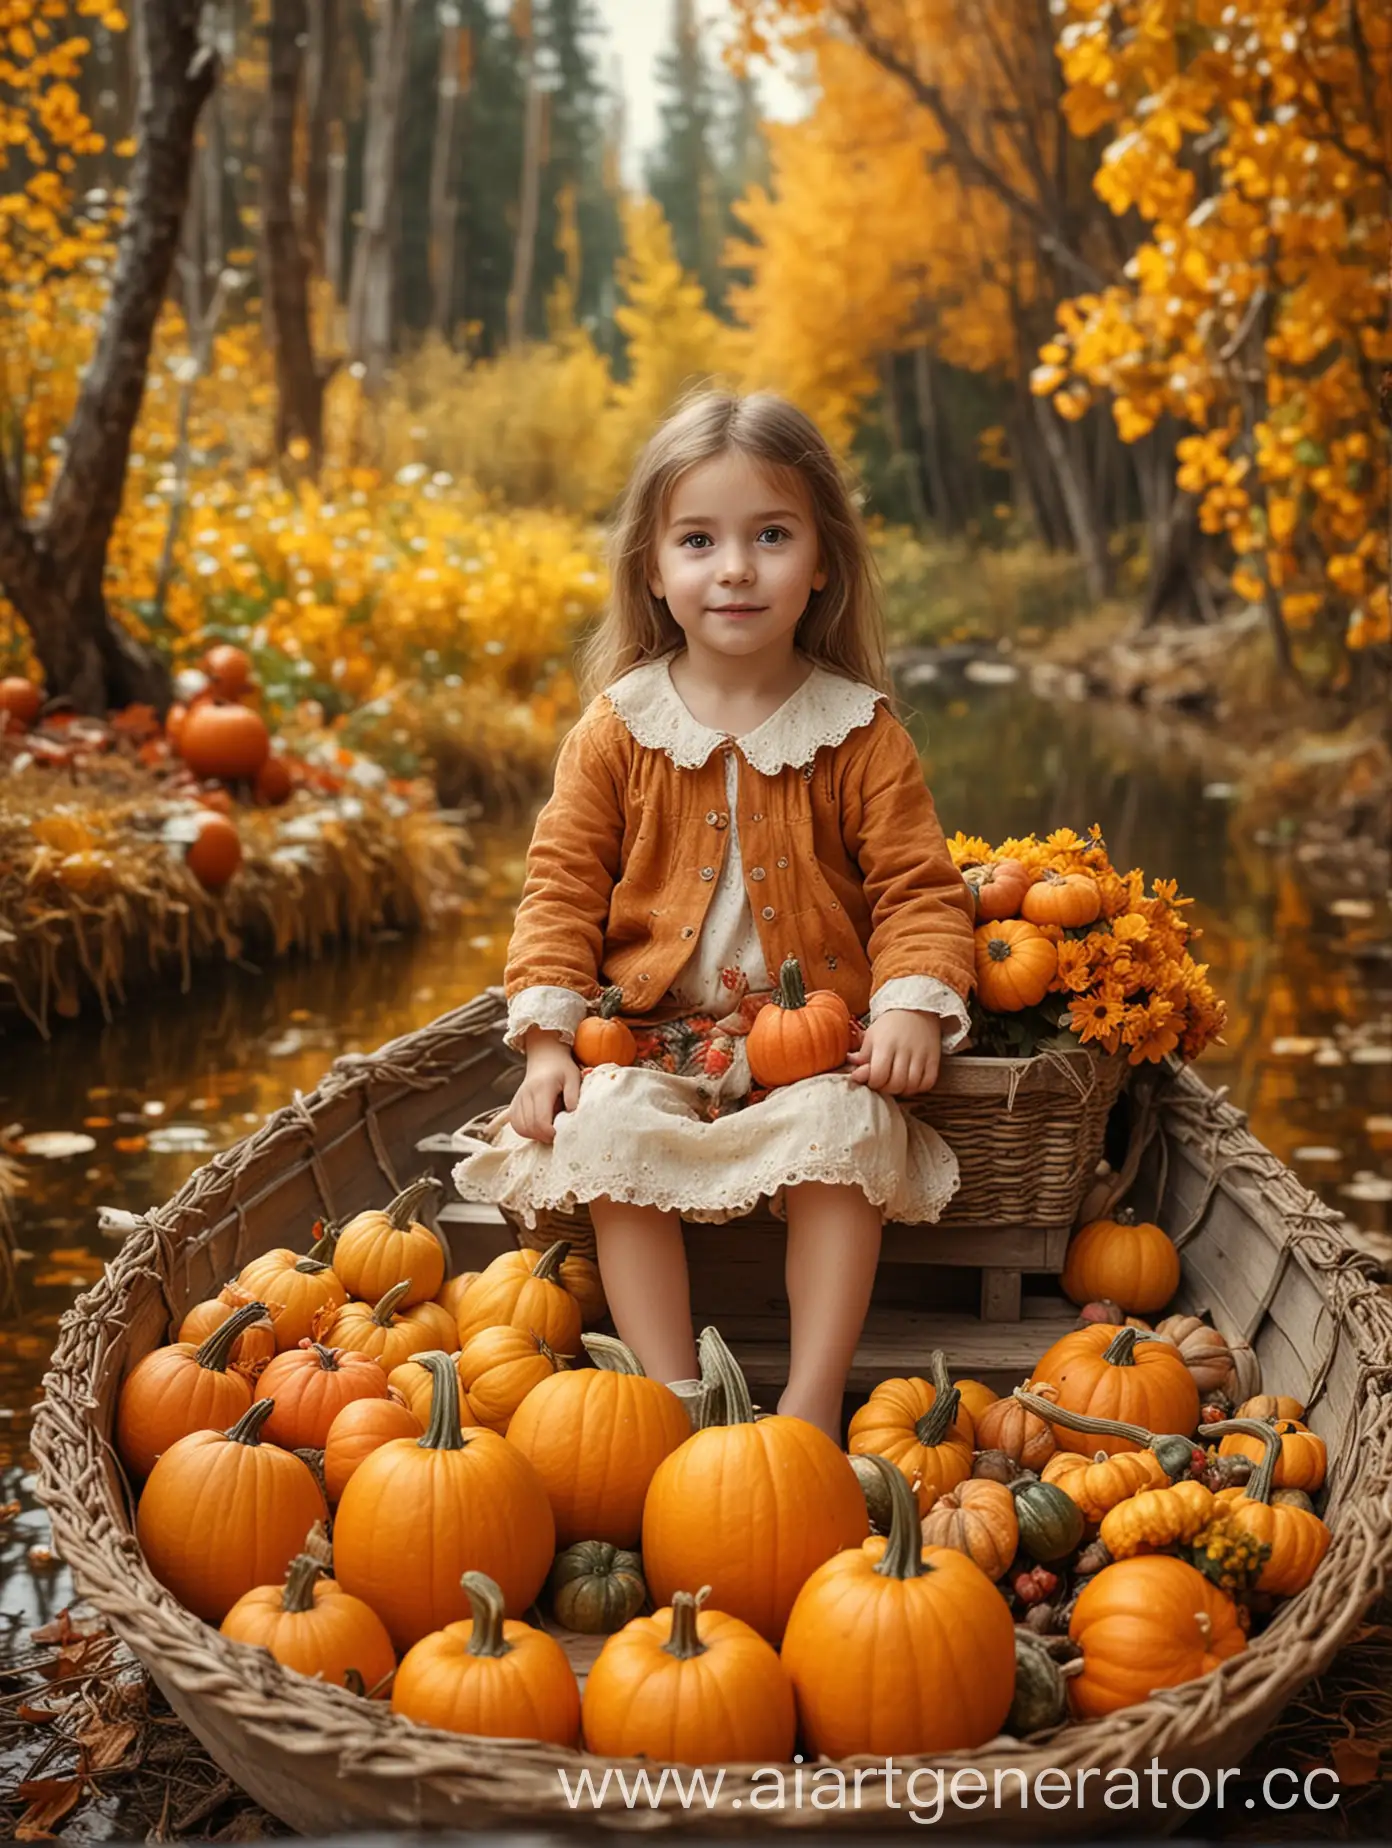 Маленькая девочка сидит в лодке, в лодке цветы в корзинке, в лодке тыква, на фоне осенний лес, фон размыт, очень реалистично